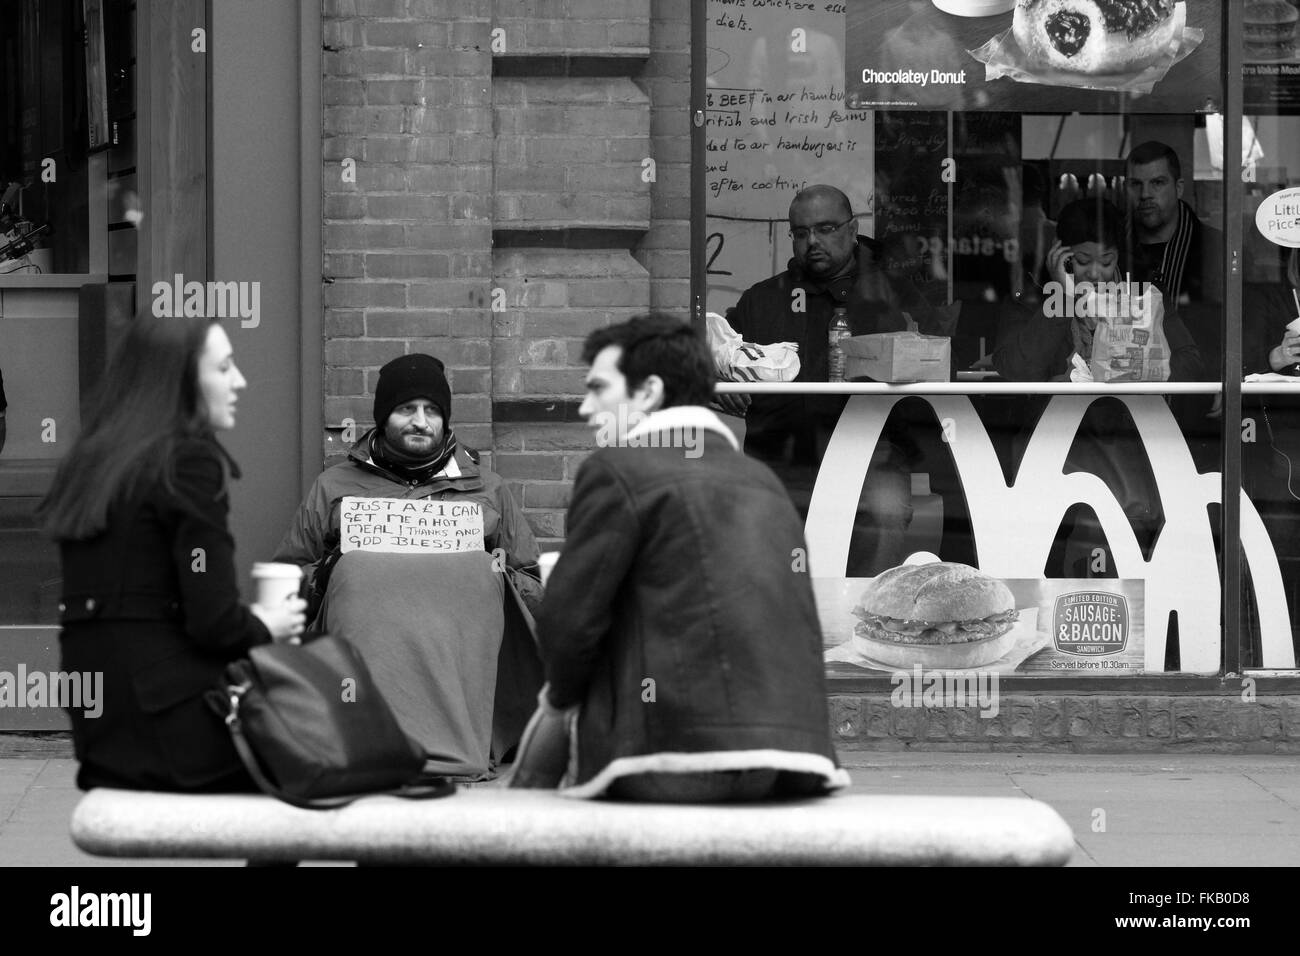 Deux personnes assis et boire tout en un sans-abri est assis à côté d'un restaurant Mcdonalds dans Oxford Street, Londres, Angleterre Banque D'Images